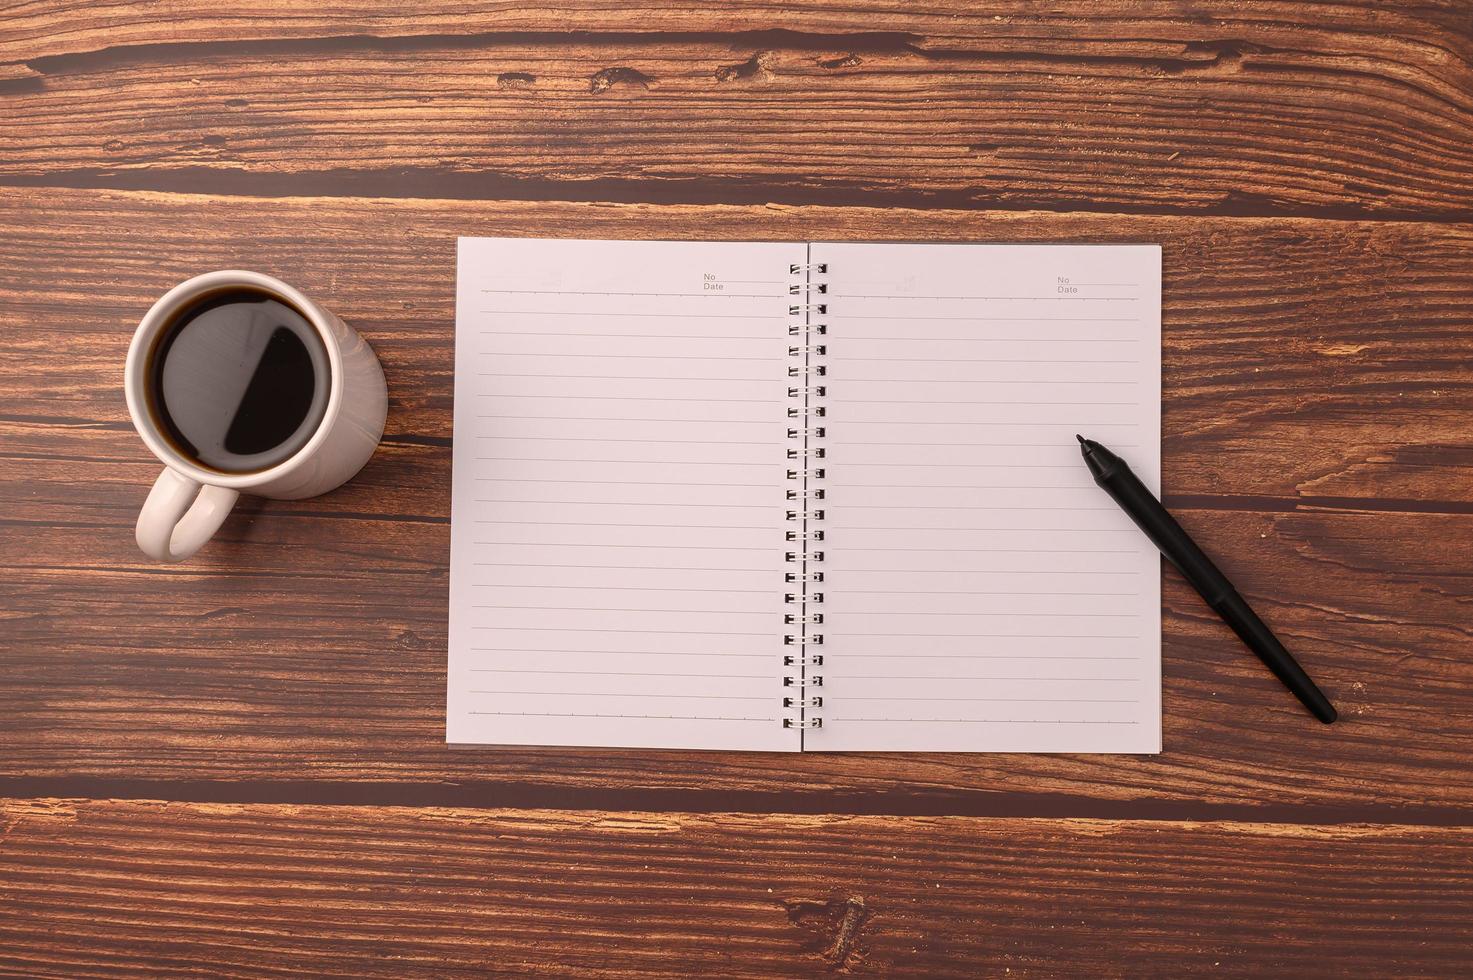 Kaffee und ein Notizbuch auf einem Schreibtisch foto